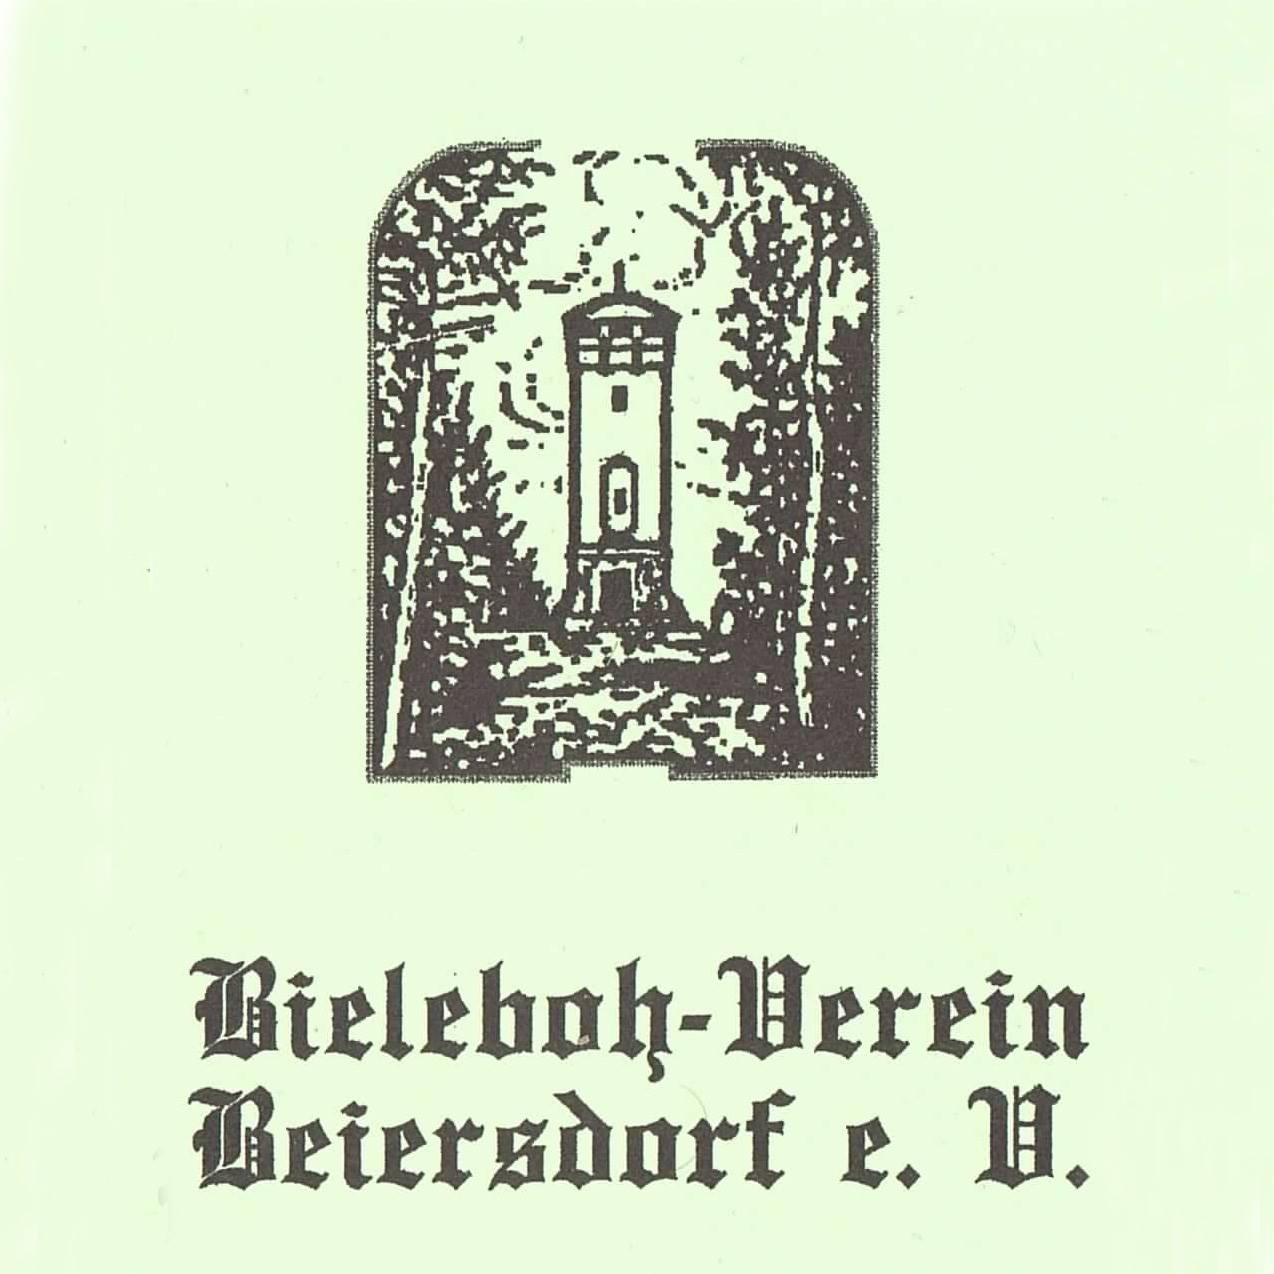 Bieleboh-Verein Beiersdorf e. V.